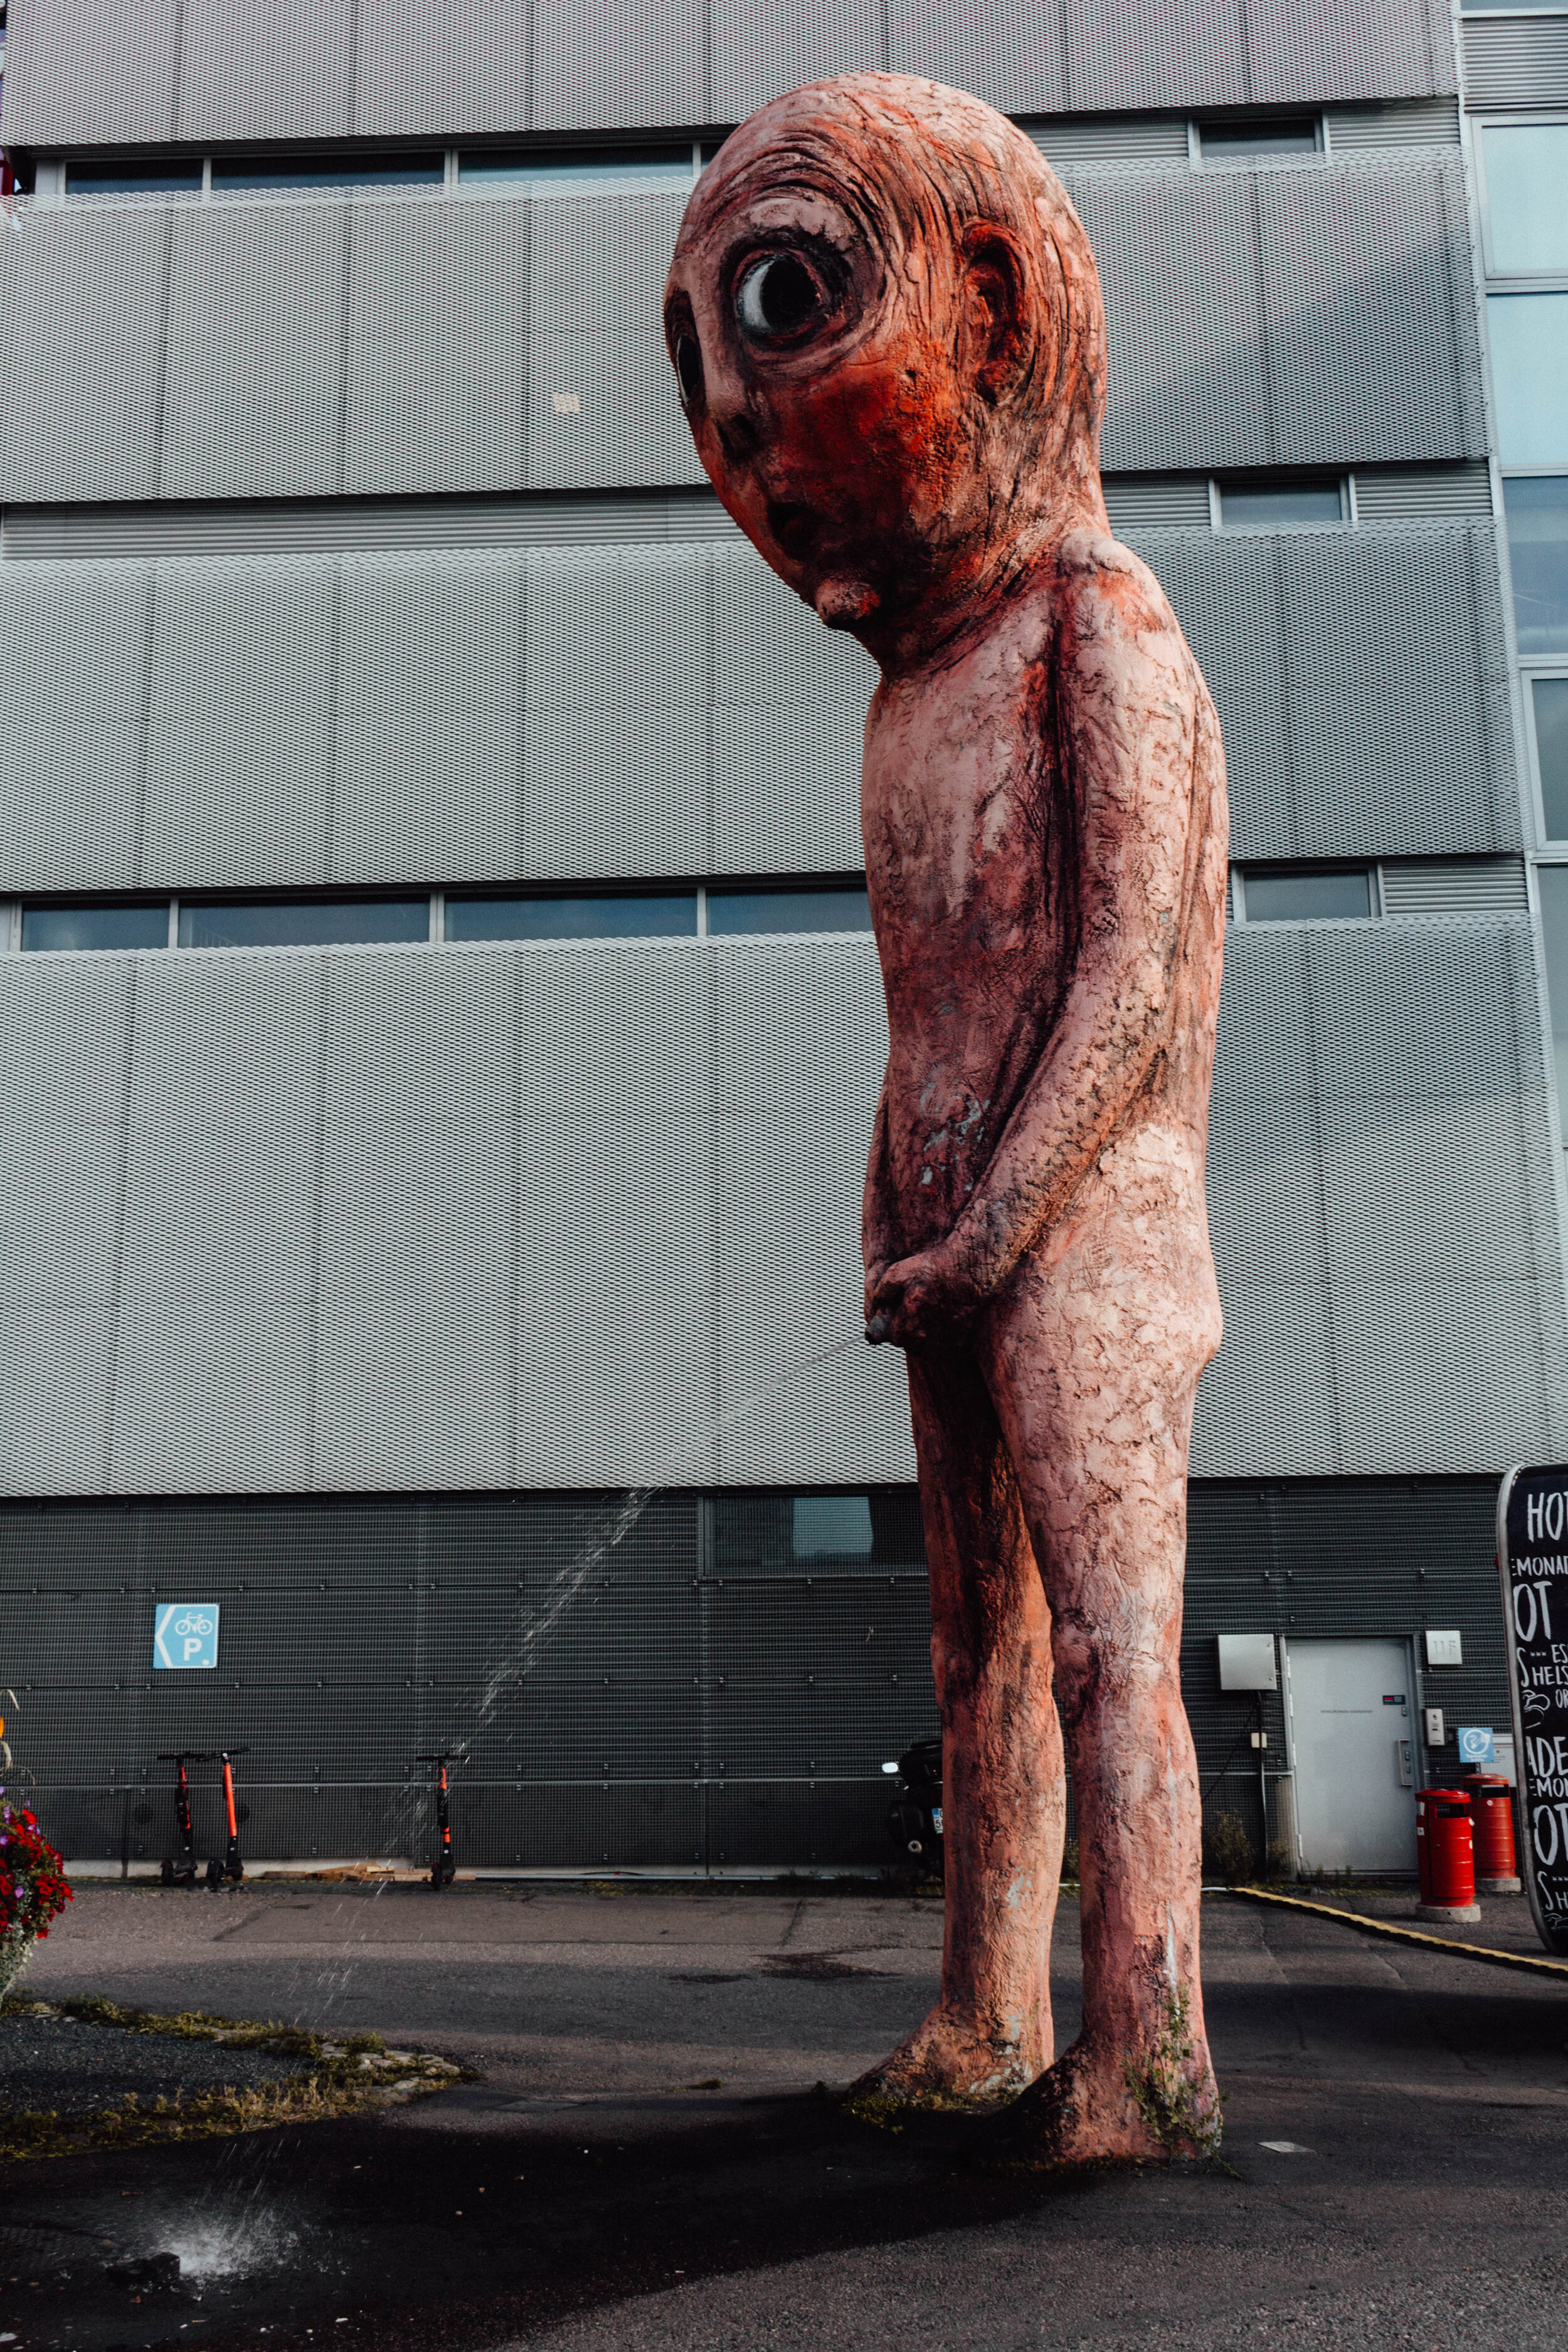 bizzarre statue in Helsinki, Finland